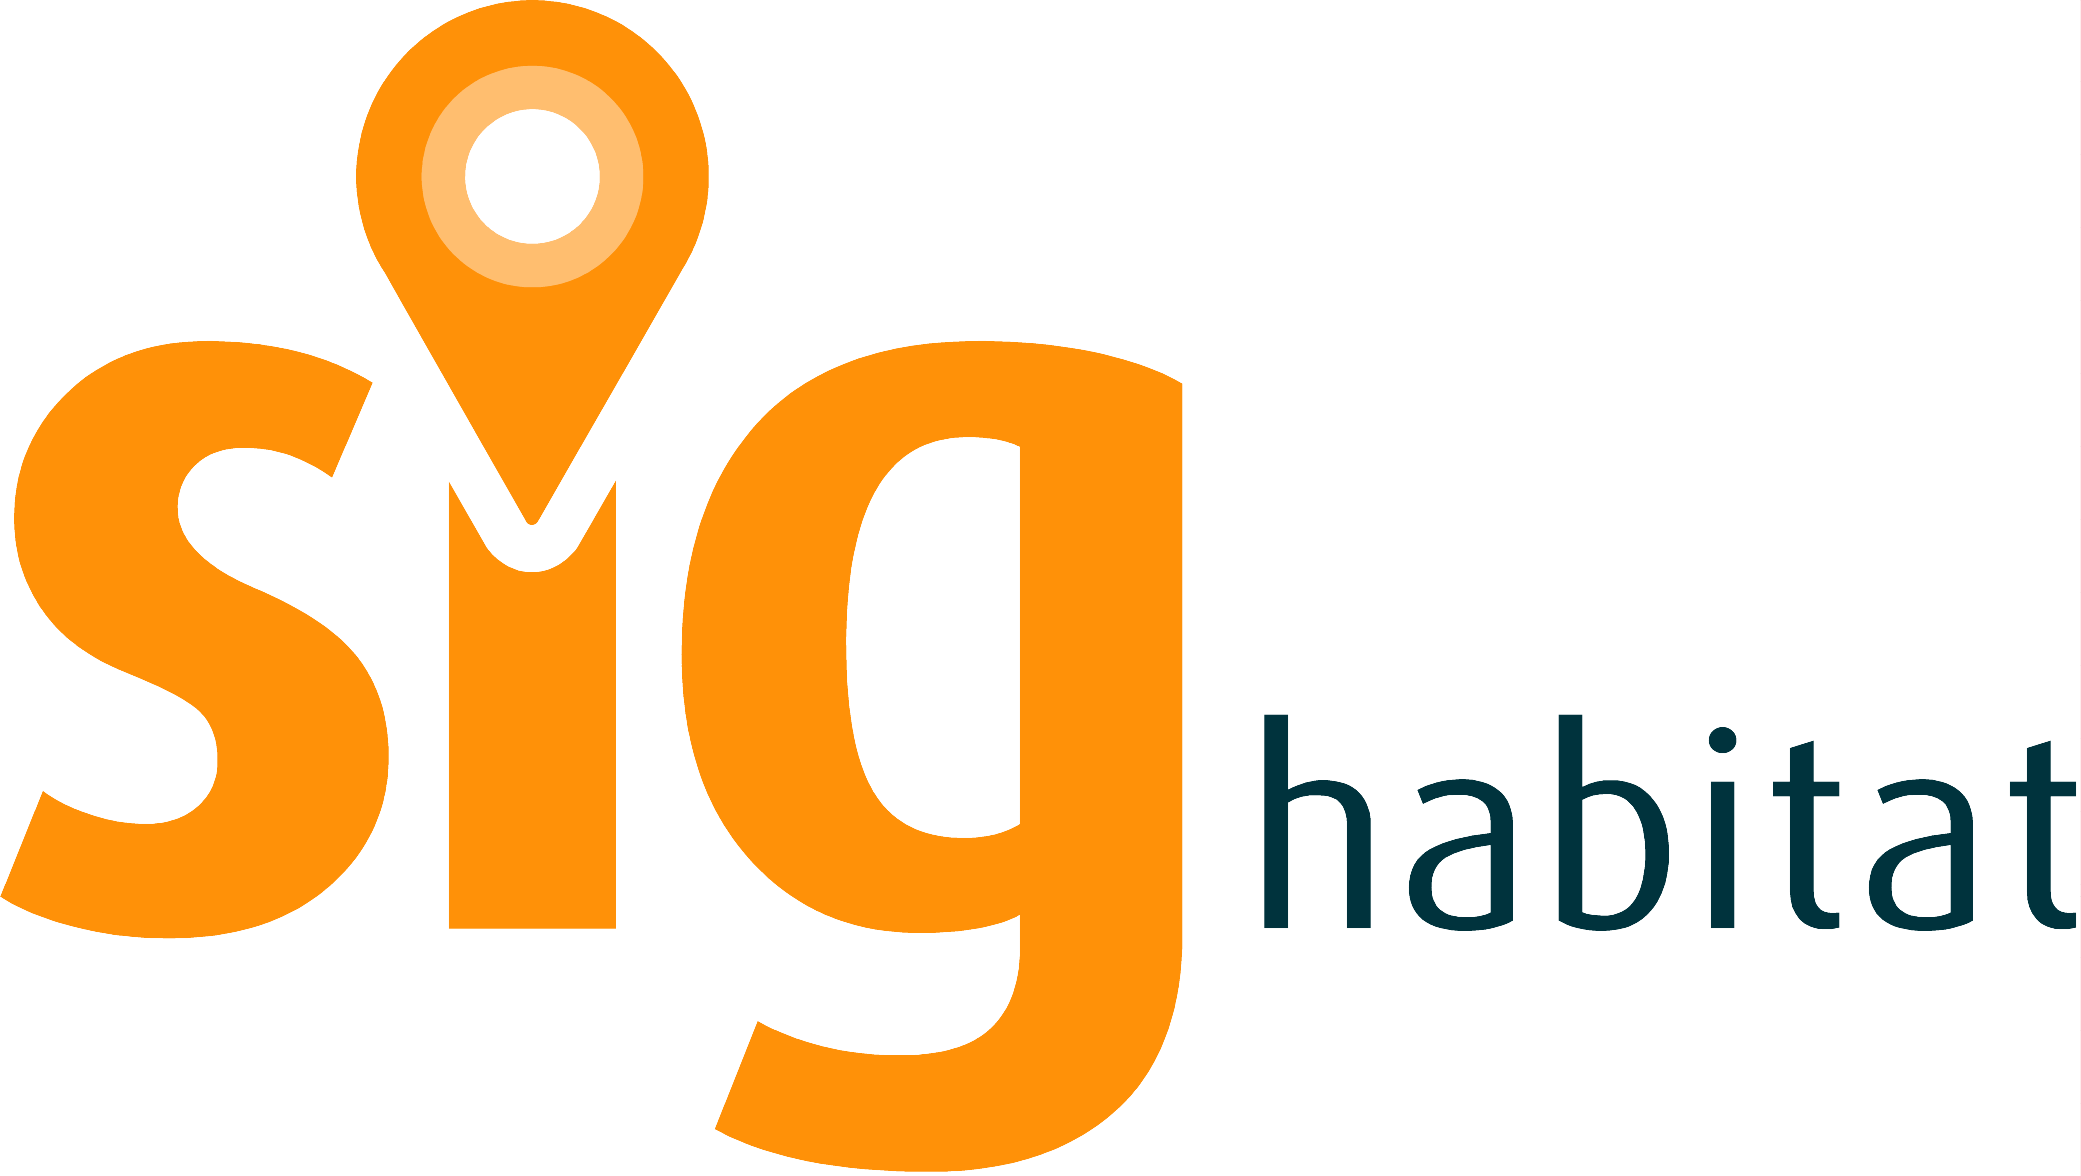 SIG HABITAT - Sistemas de informação e gestão do Cluster Habitat Sustentável